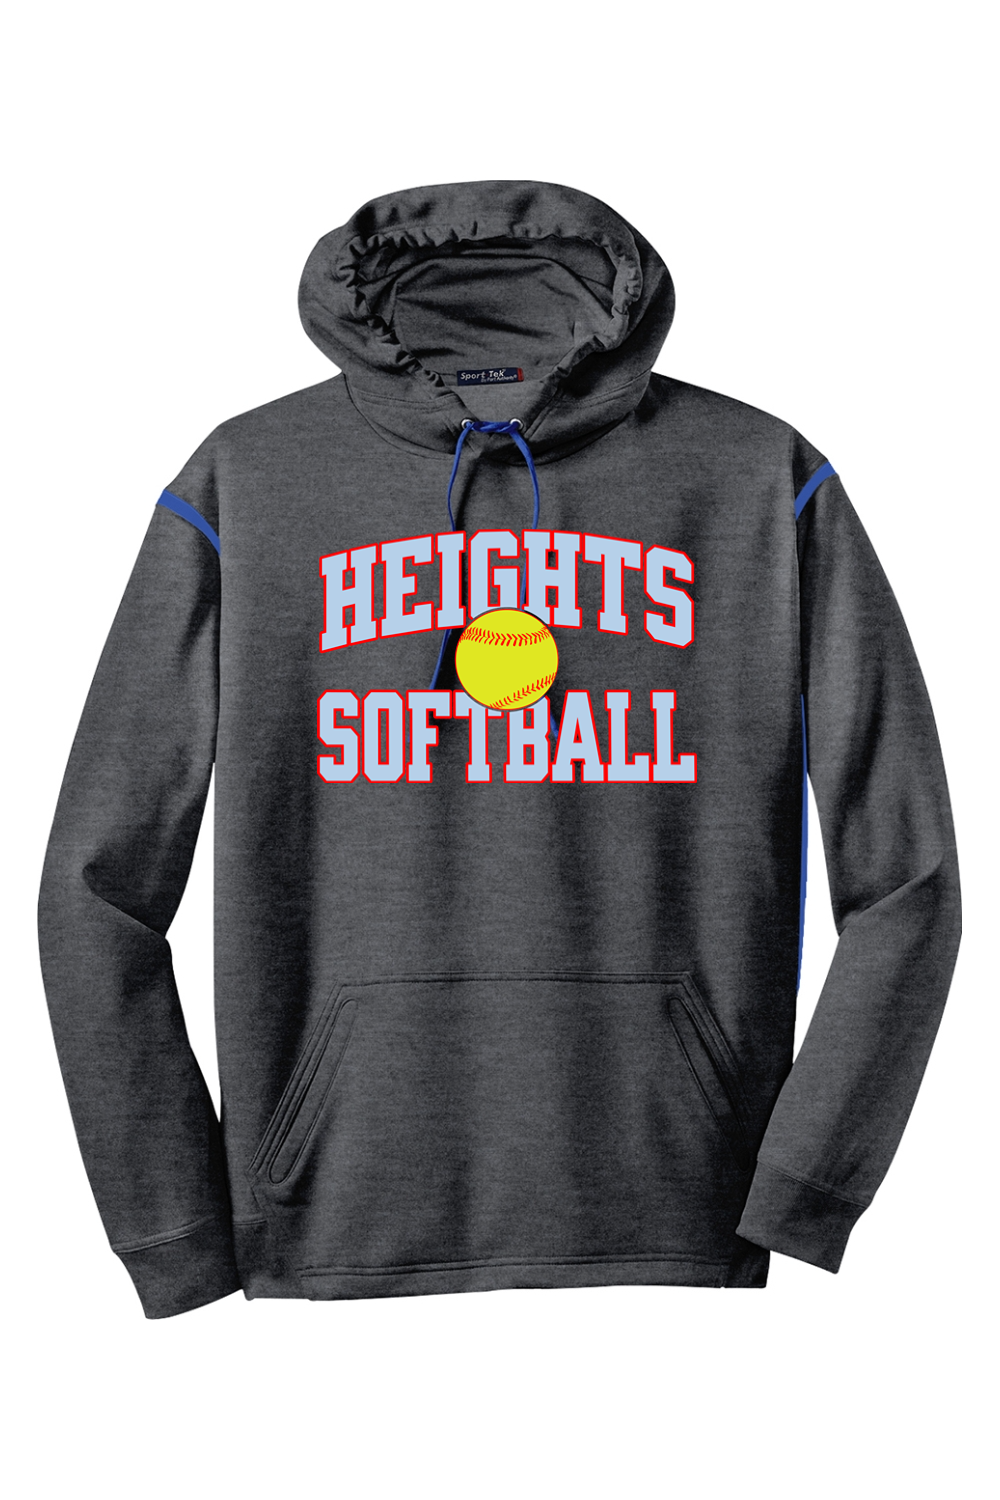 Heights Softball - Colorblock Hooded Sweatshirt - Yinzylvania